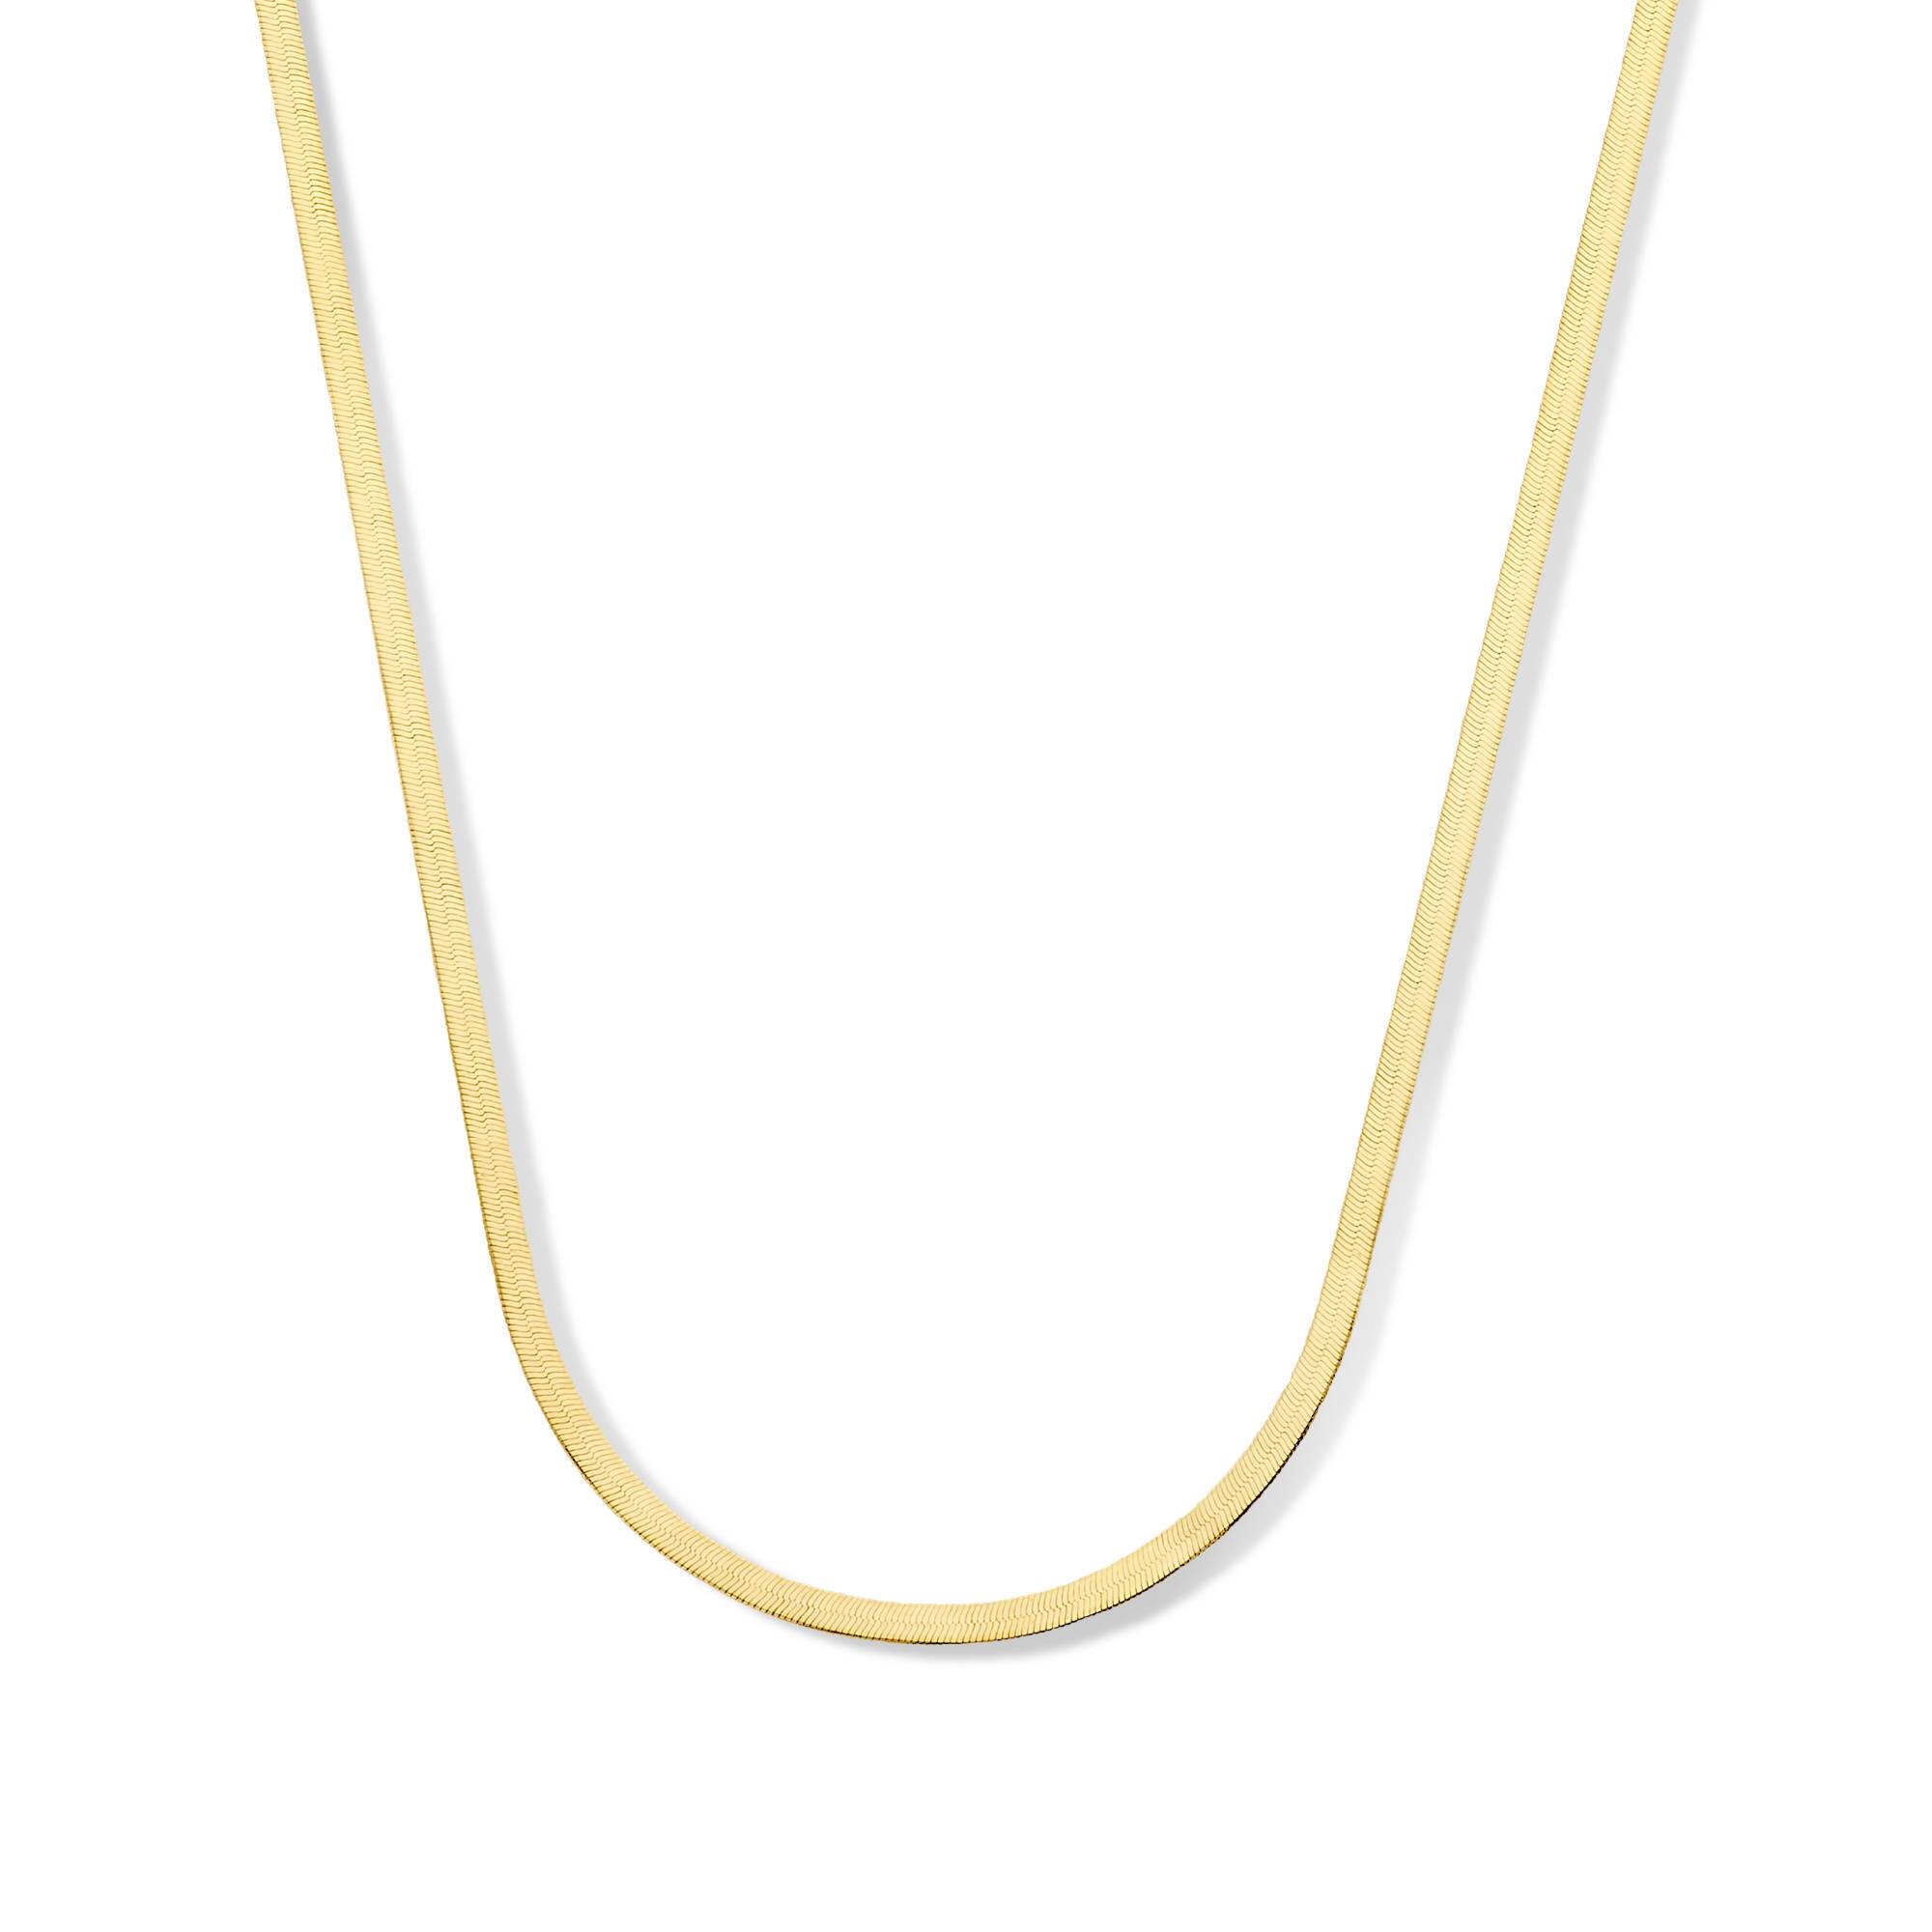 Aidee Leontine 14 karat gold necklace